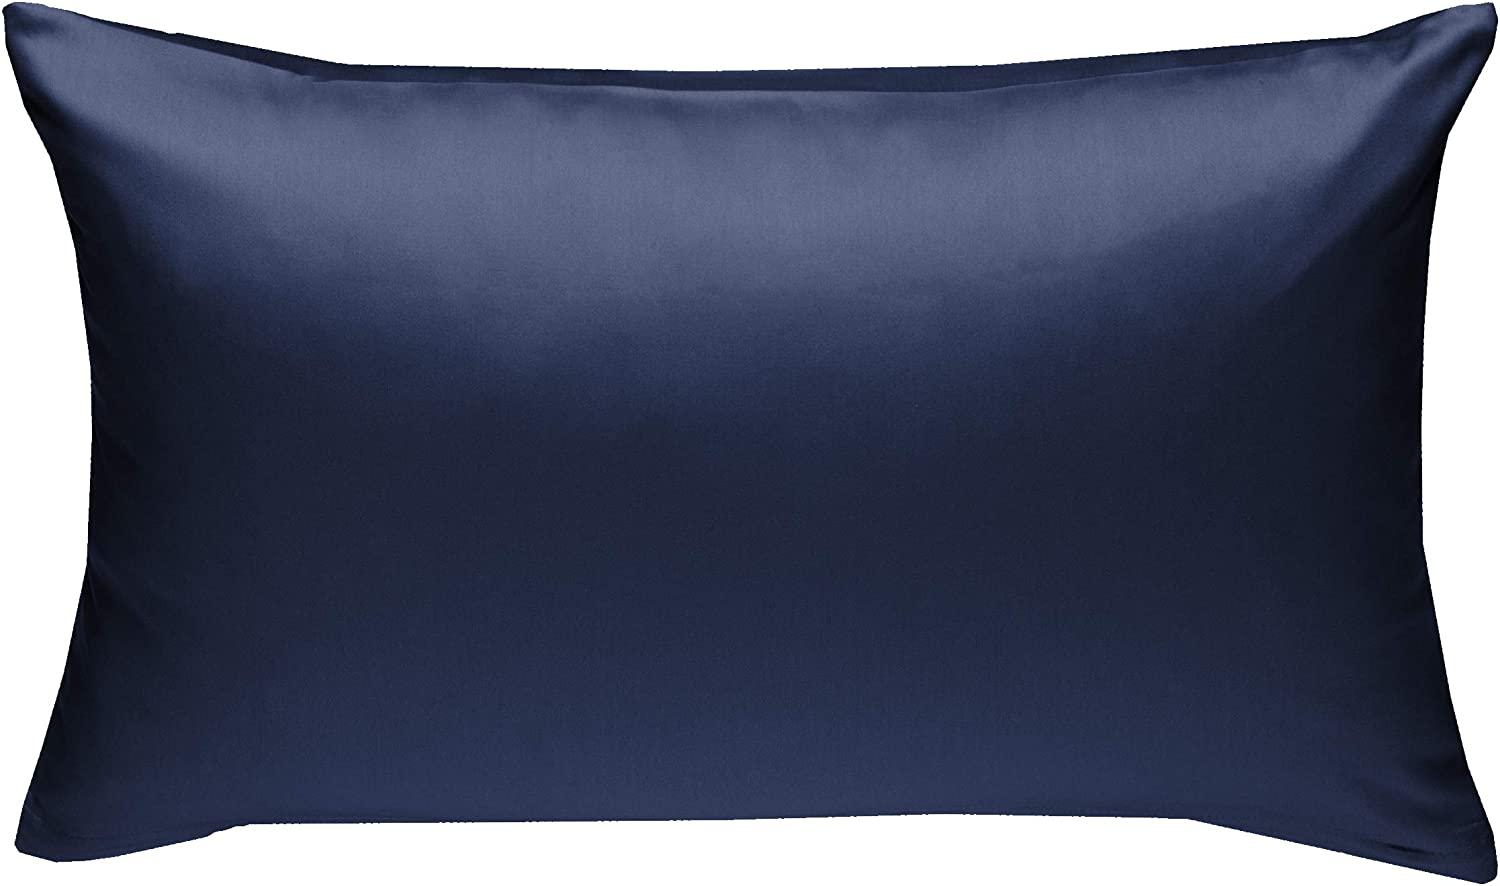 Bettwaesche-mit-Stil Mako-Satin / Baumwollsatin Bettwäsche uni / einfarbig dunkelblau Kissenbezug 50x70 cm Bild 1